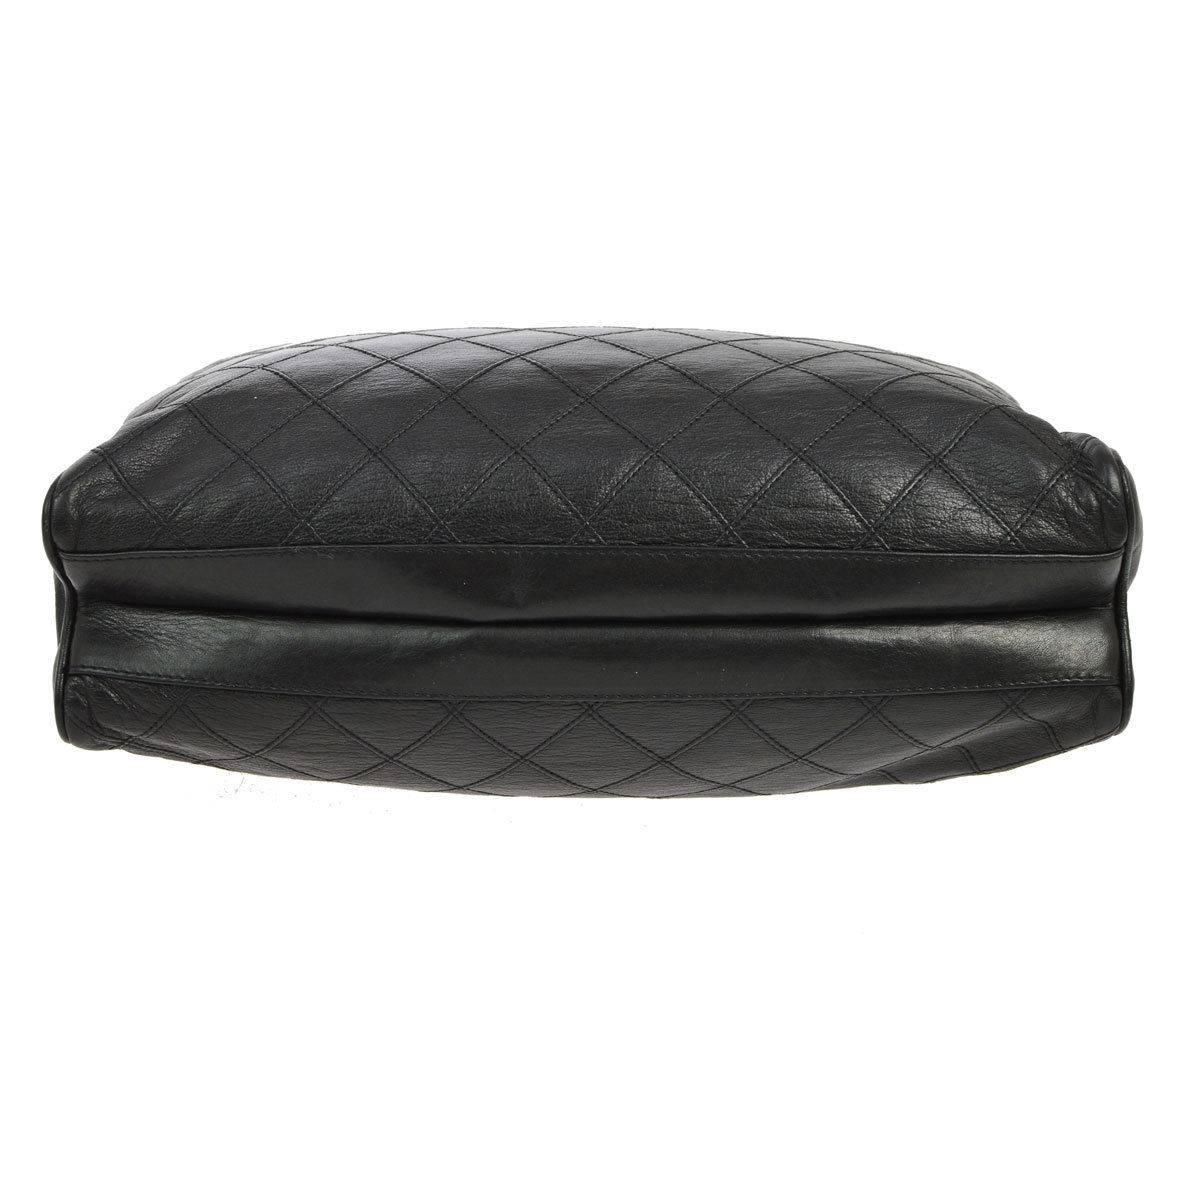 Women's Chanel Vintage Black Leather Quilted Carryall Shopper Tote Shoulder Bag